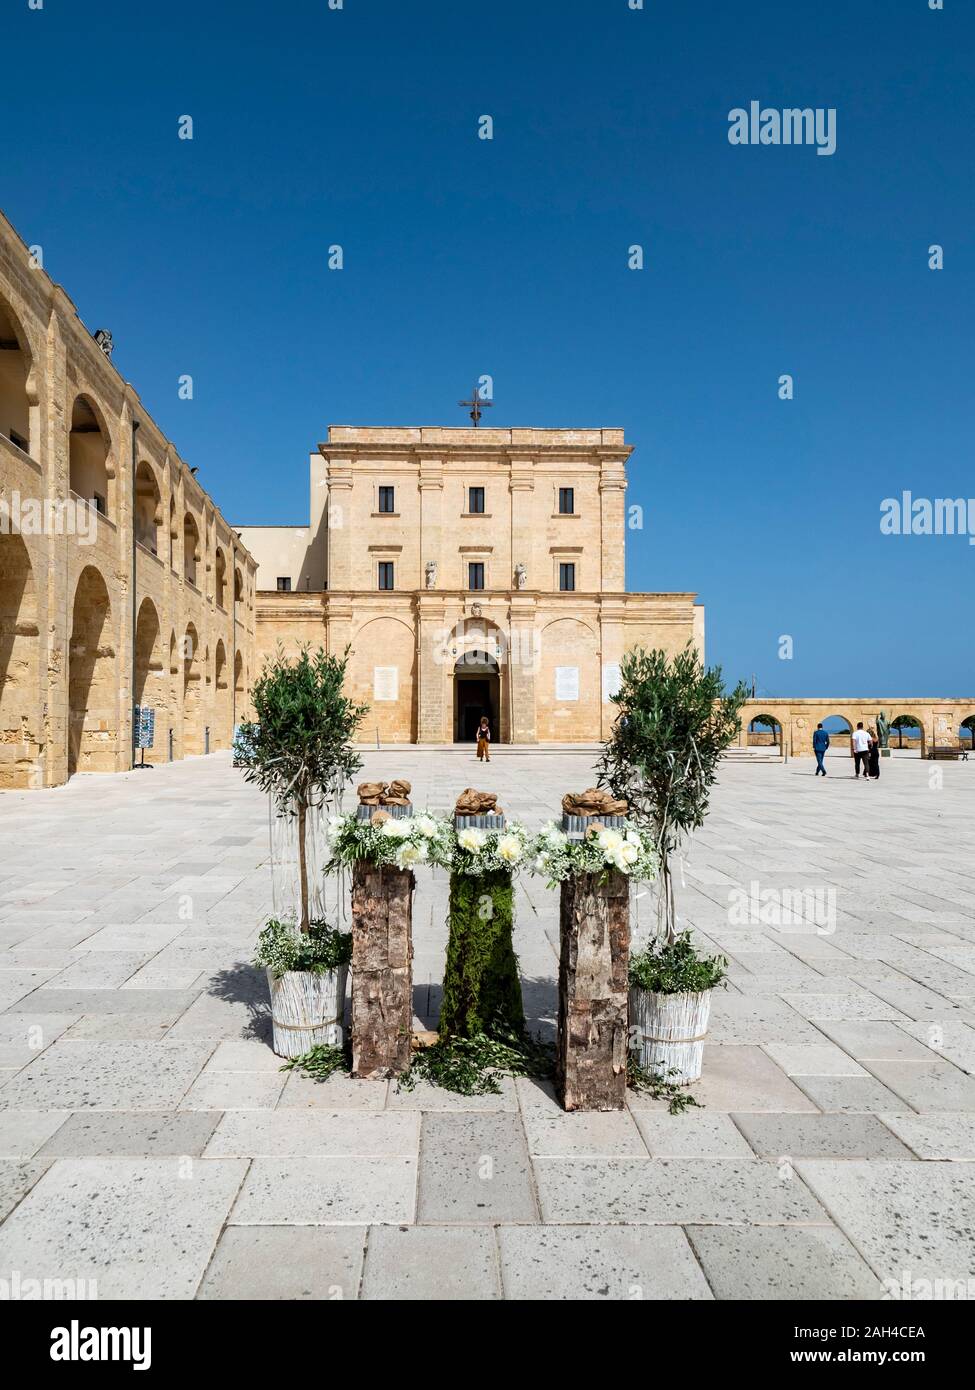 Italien, Provinz Lecce, Santa Maria di Leuca, Topfpflanzen stehen auf Platz der Basilika Heiligtum Santa Maria de finibus terrae Stockfoto